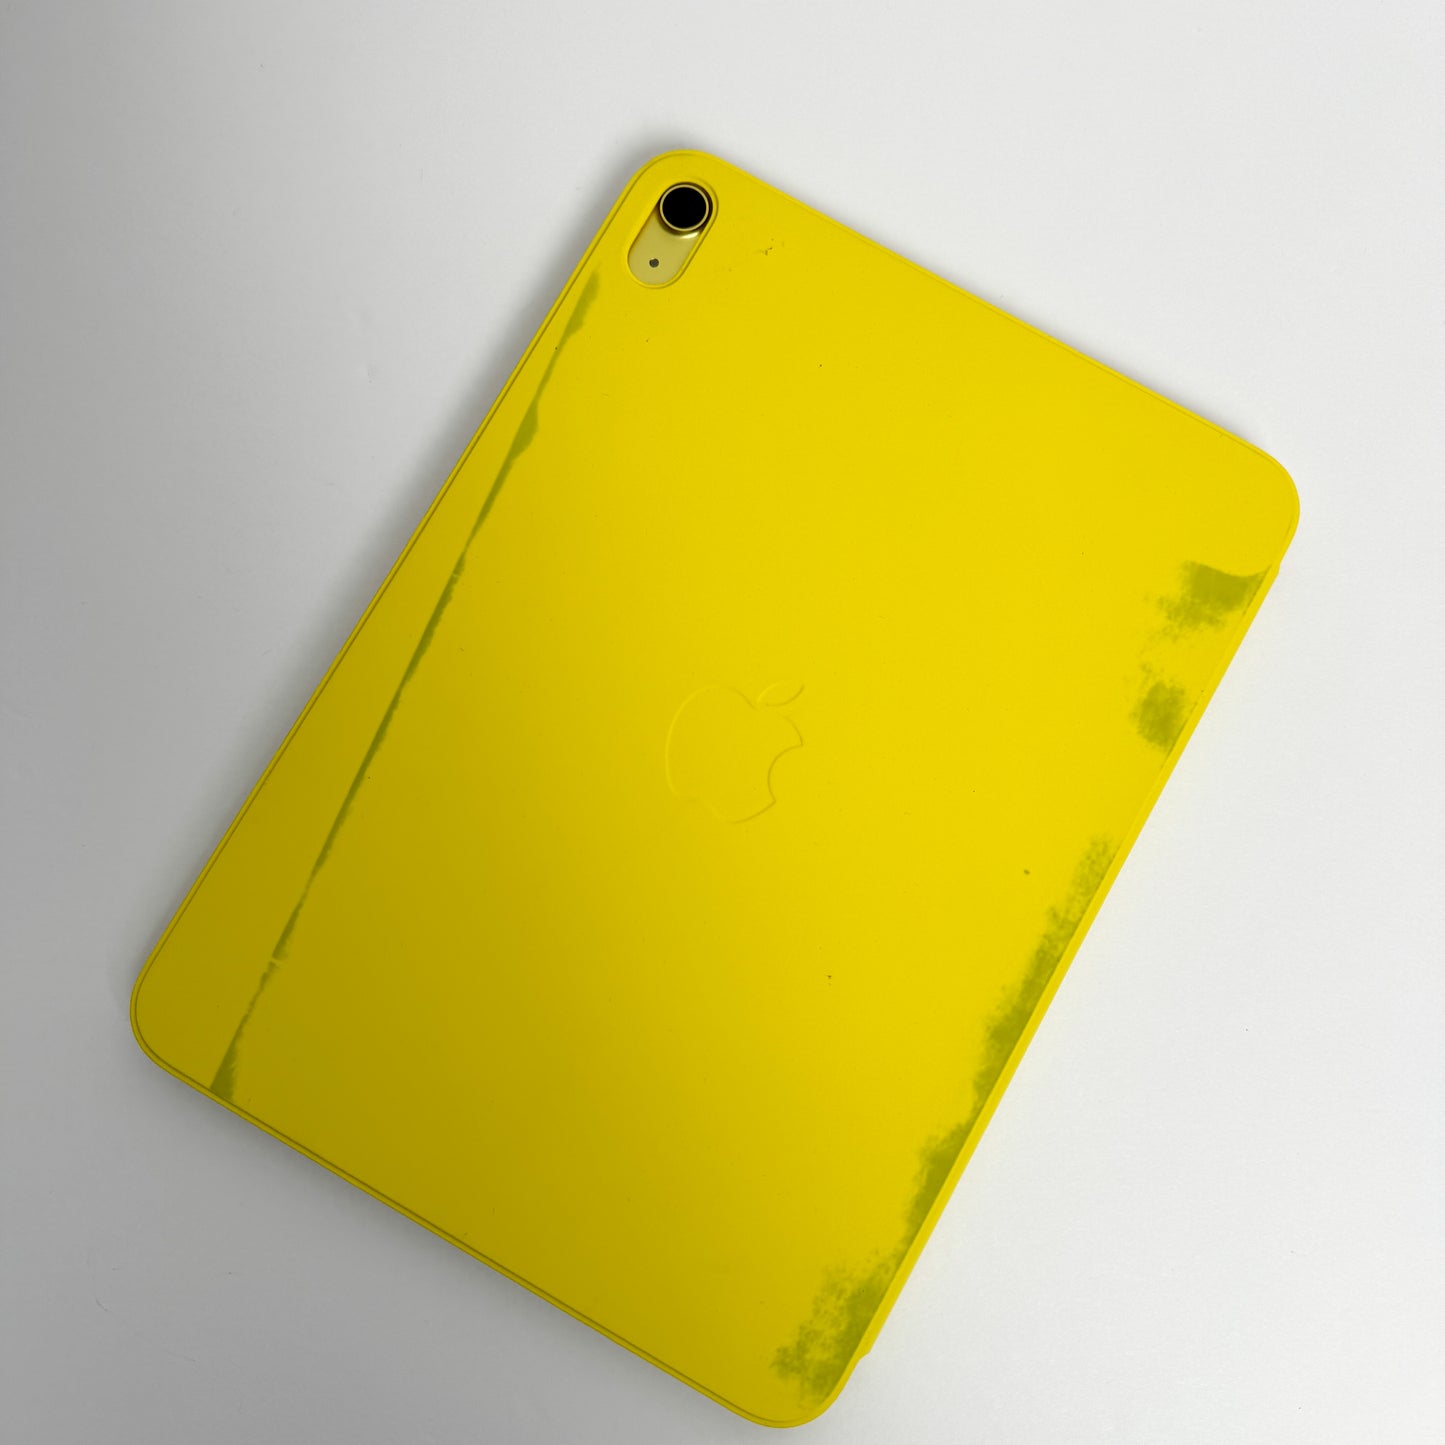 2022 Apple iPad 10th Generation - Yellow - 256GB WiFi 10.9"